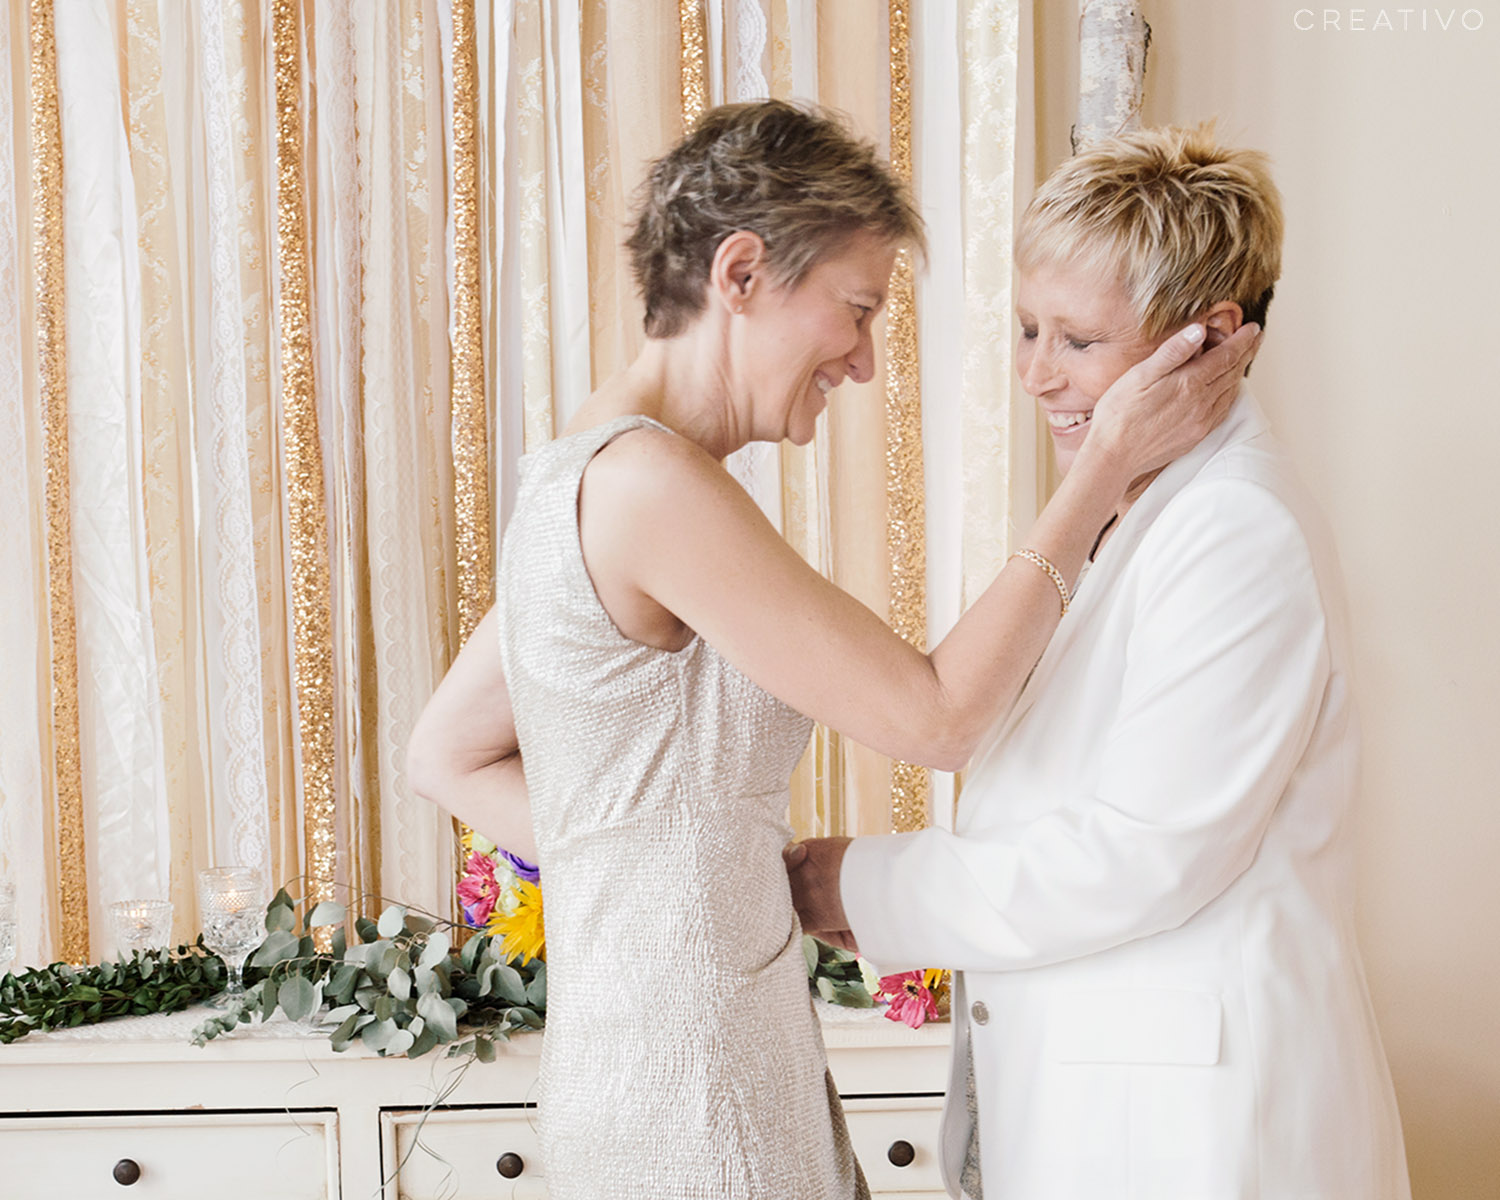 04-KristinMary-Creativo-Loft-gay-wedding.jpg